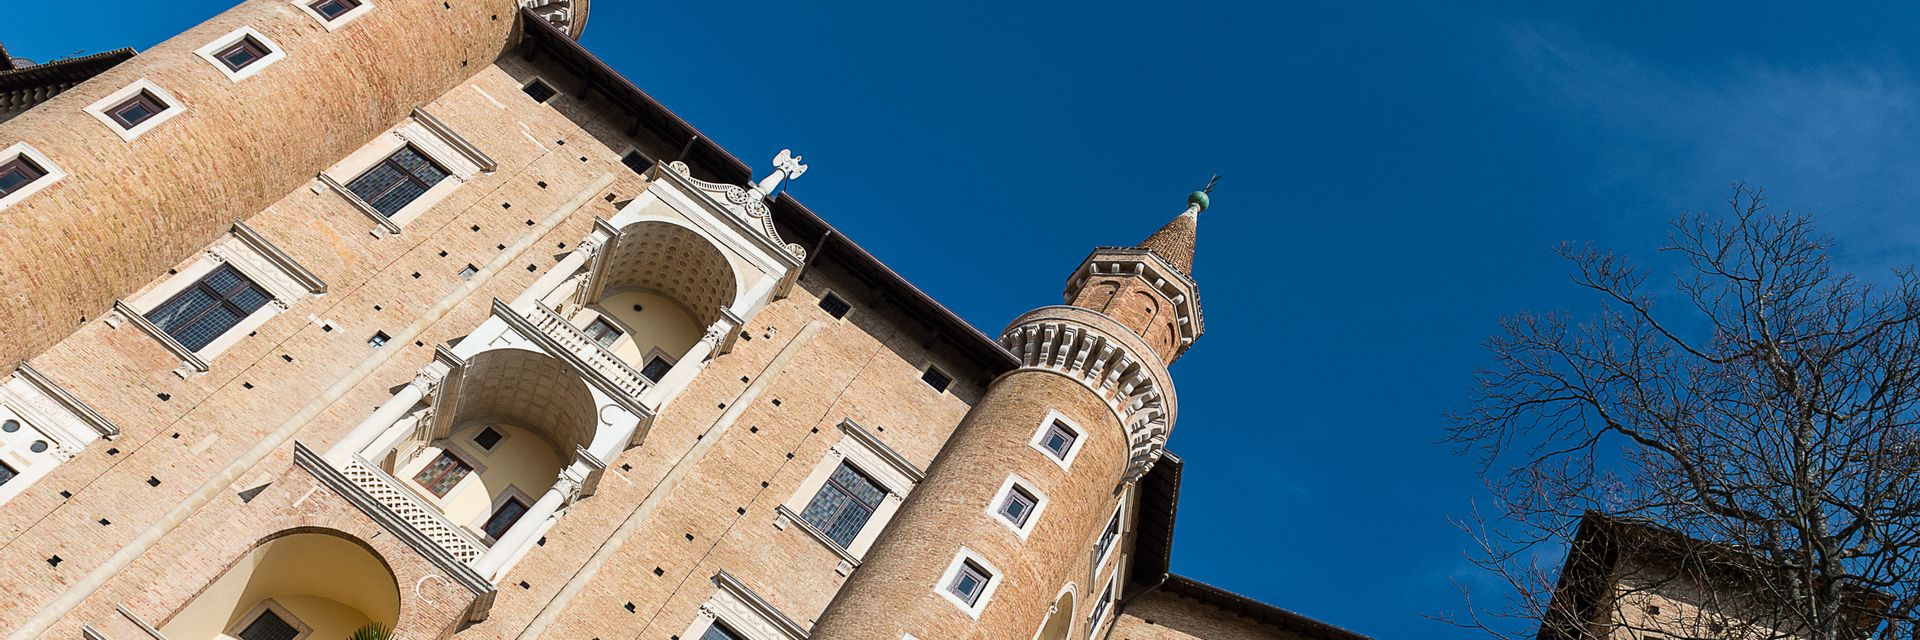 Galleria Nazionale delle Marche – Palazzo Ducale di Urbino